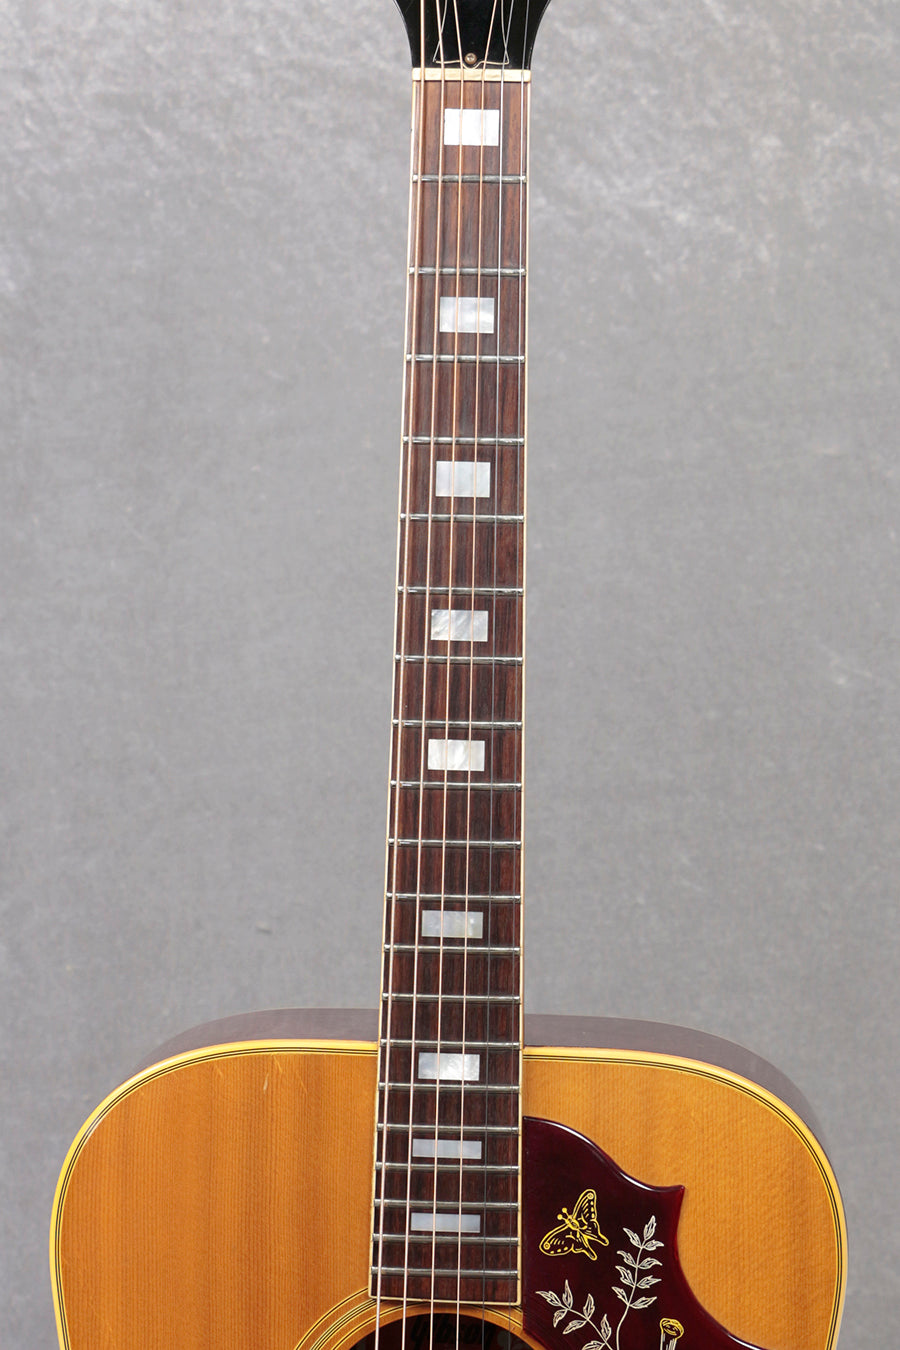 [SN B122731] USED Gibson / 1974-1975 Hummingbird [06]